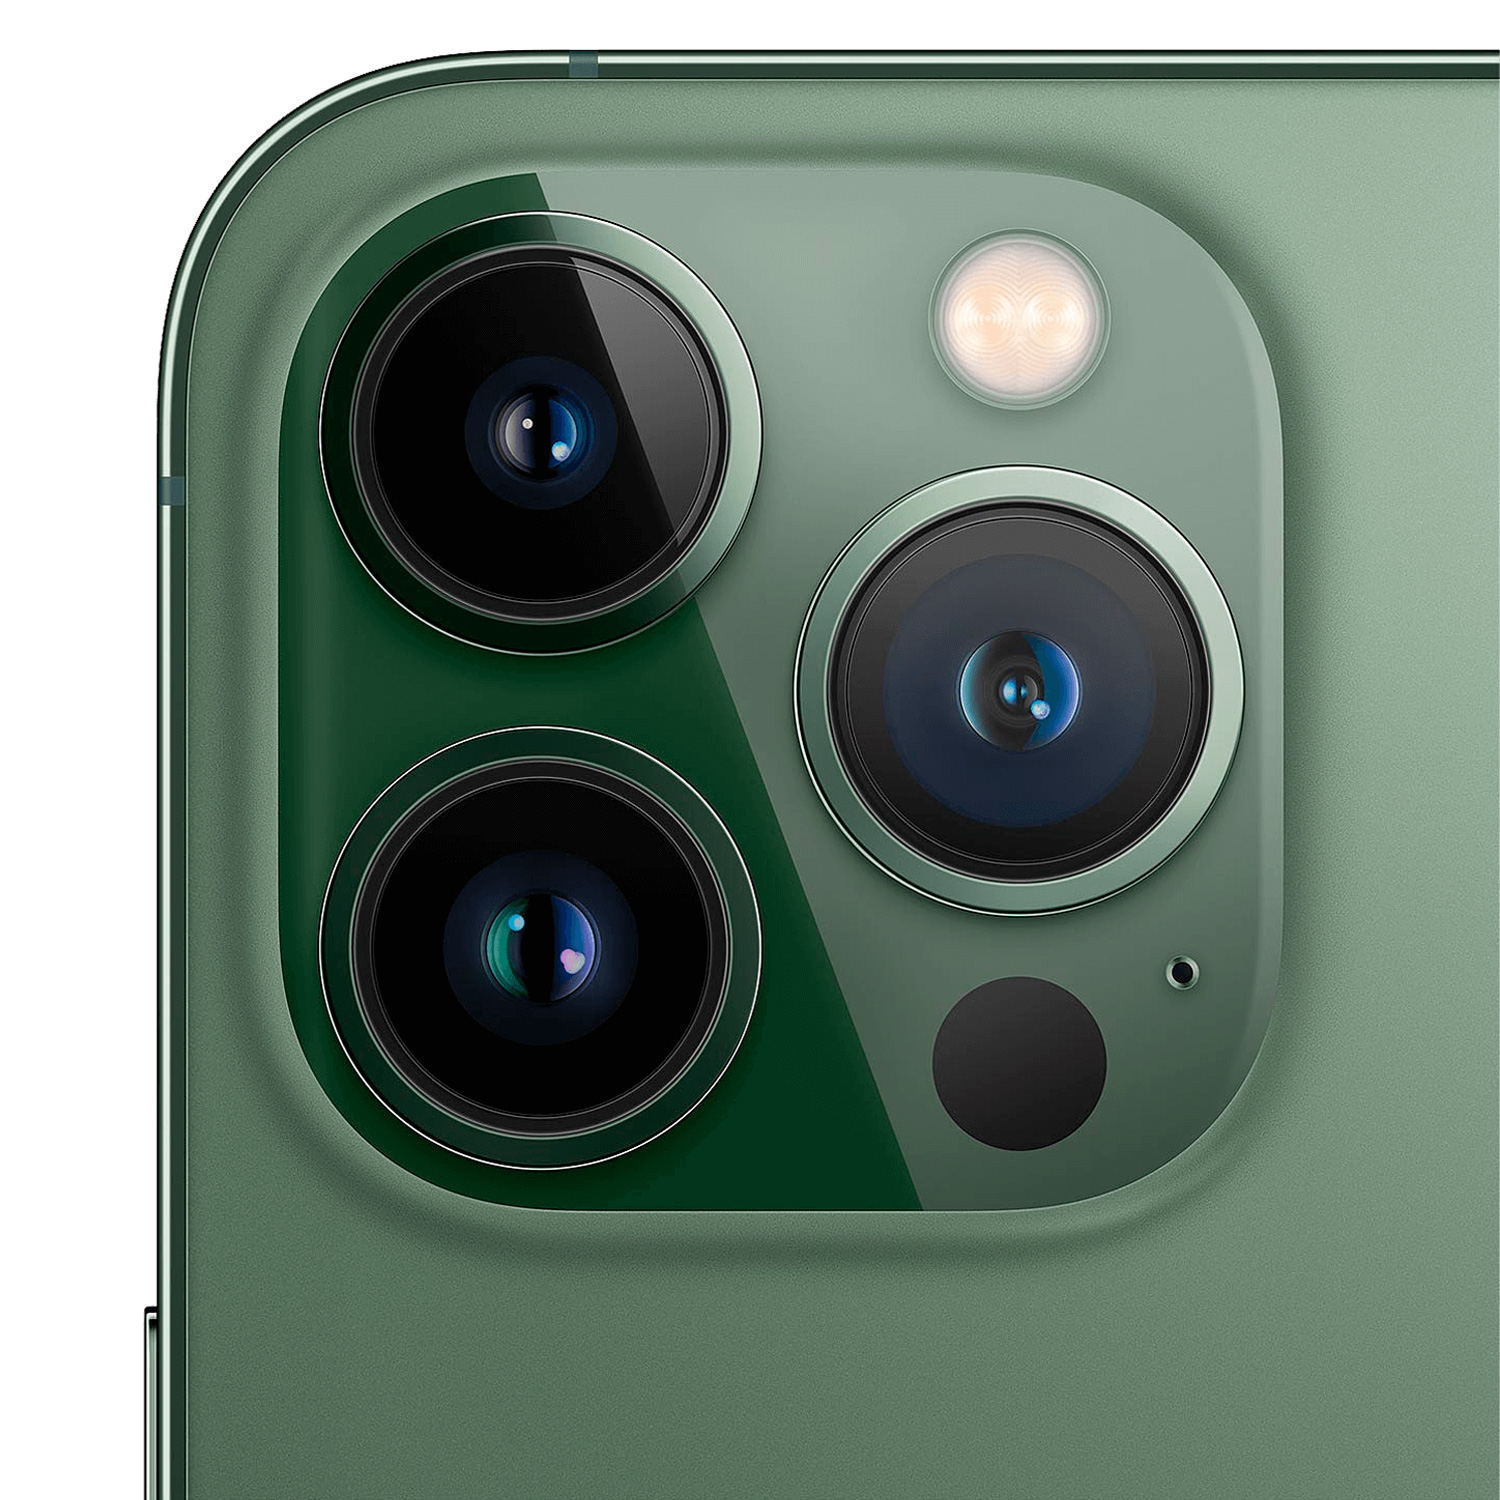 Celular Apple iPhone 13 Pro 128GB / 5G / Tela 6.1''/ Câmeras de 12MP+12MP+12MP e 12MP - Green (Só Aparelho)(Swap A)
